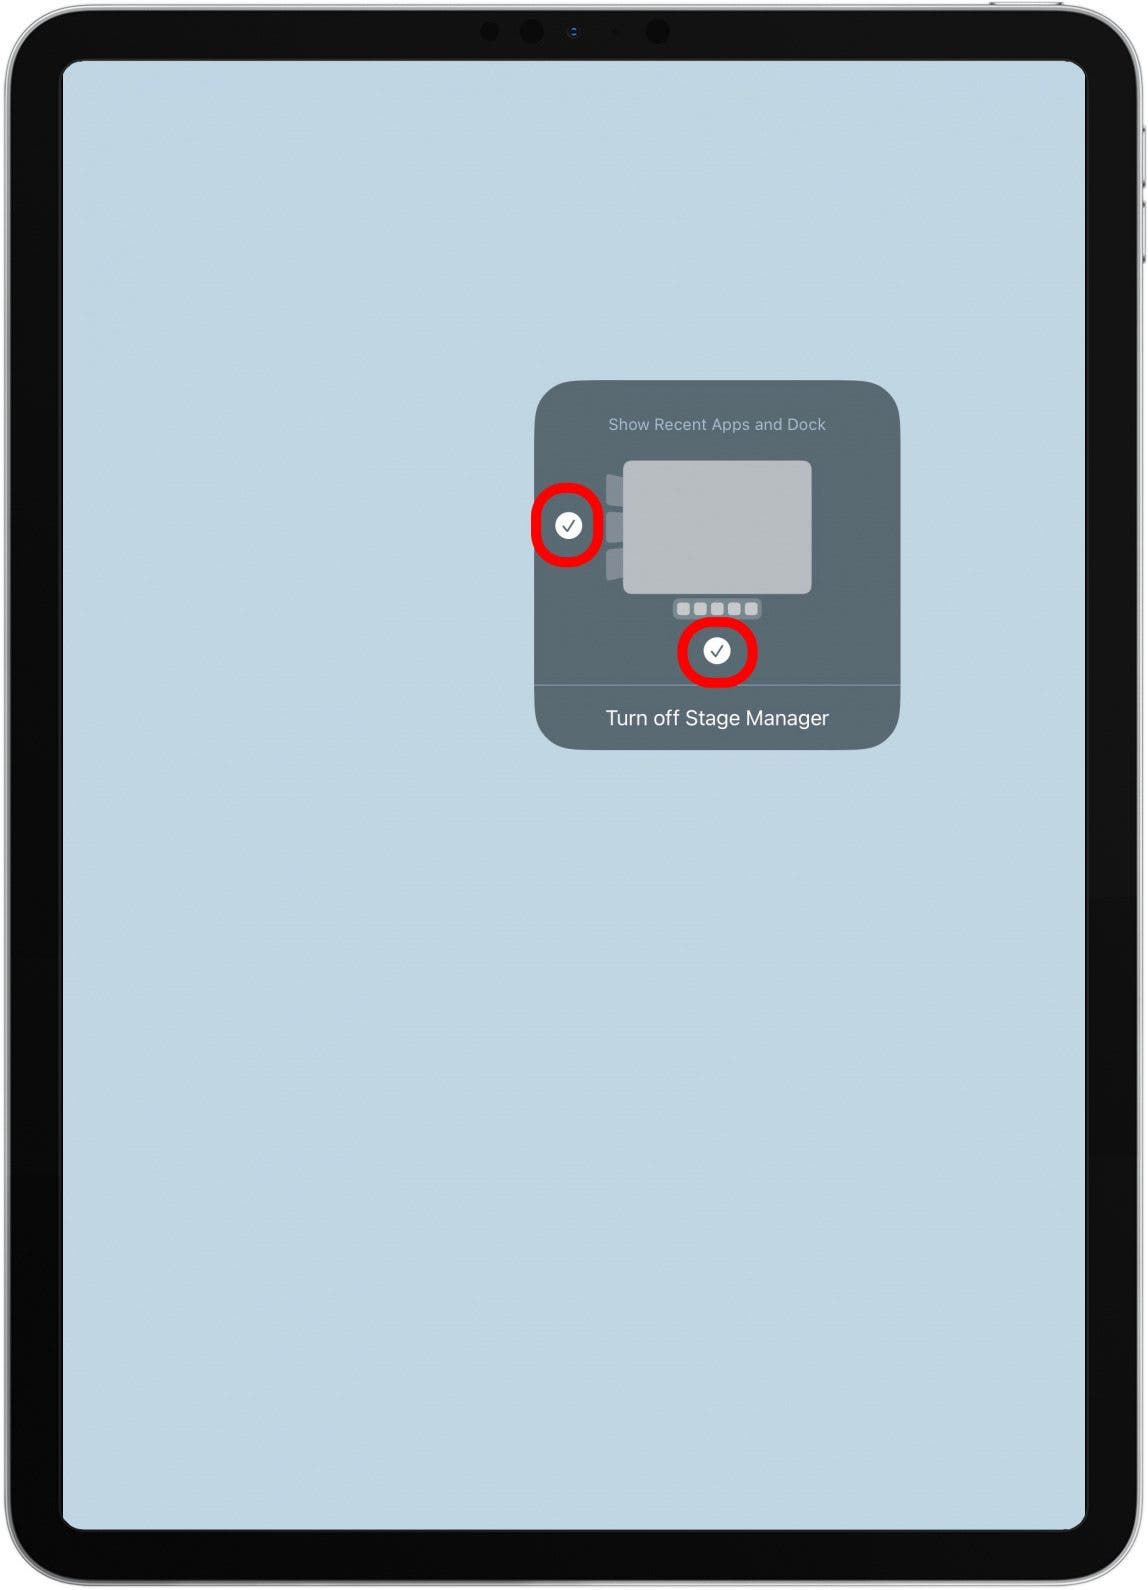 Vous pouvez également modifier les paramètres de Stage Manager dans Control Center en appuyant longuement sur l'icône.  Sélectionnez si vous souhaitez voir Dock et une barre latérale de vos applications ouvertes dans Stage Manager.